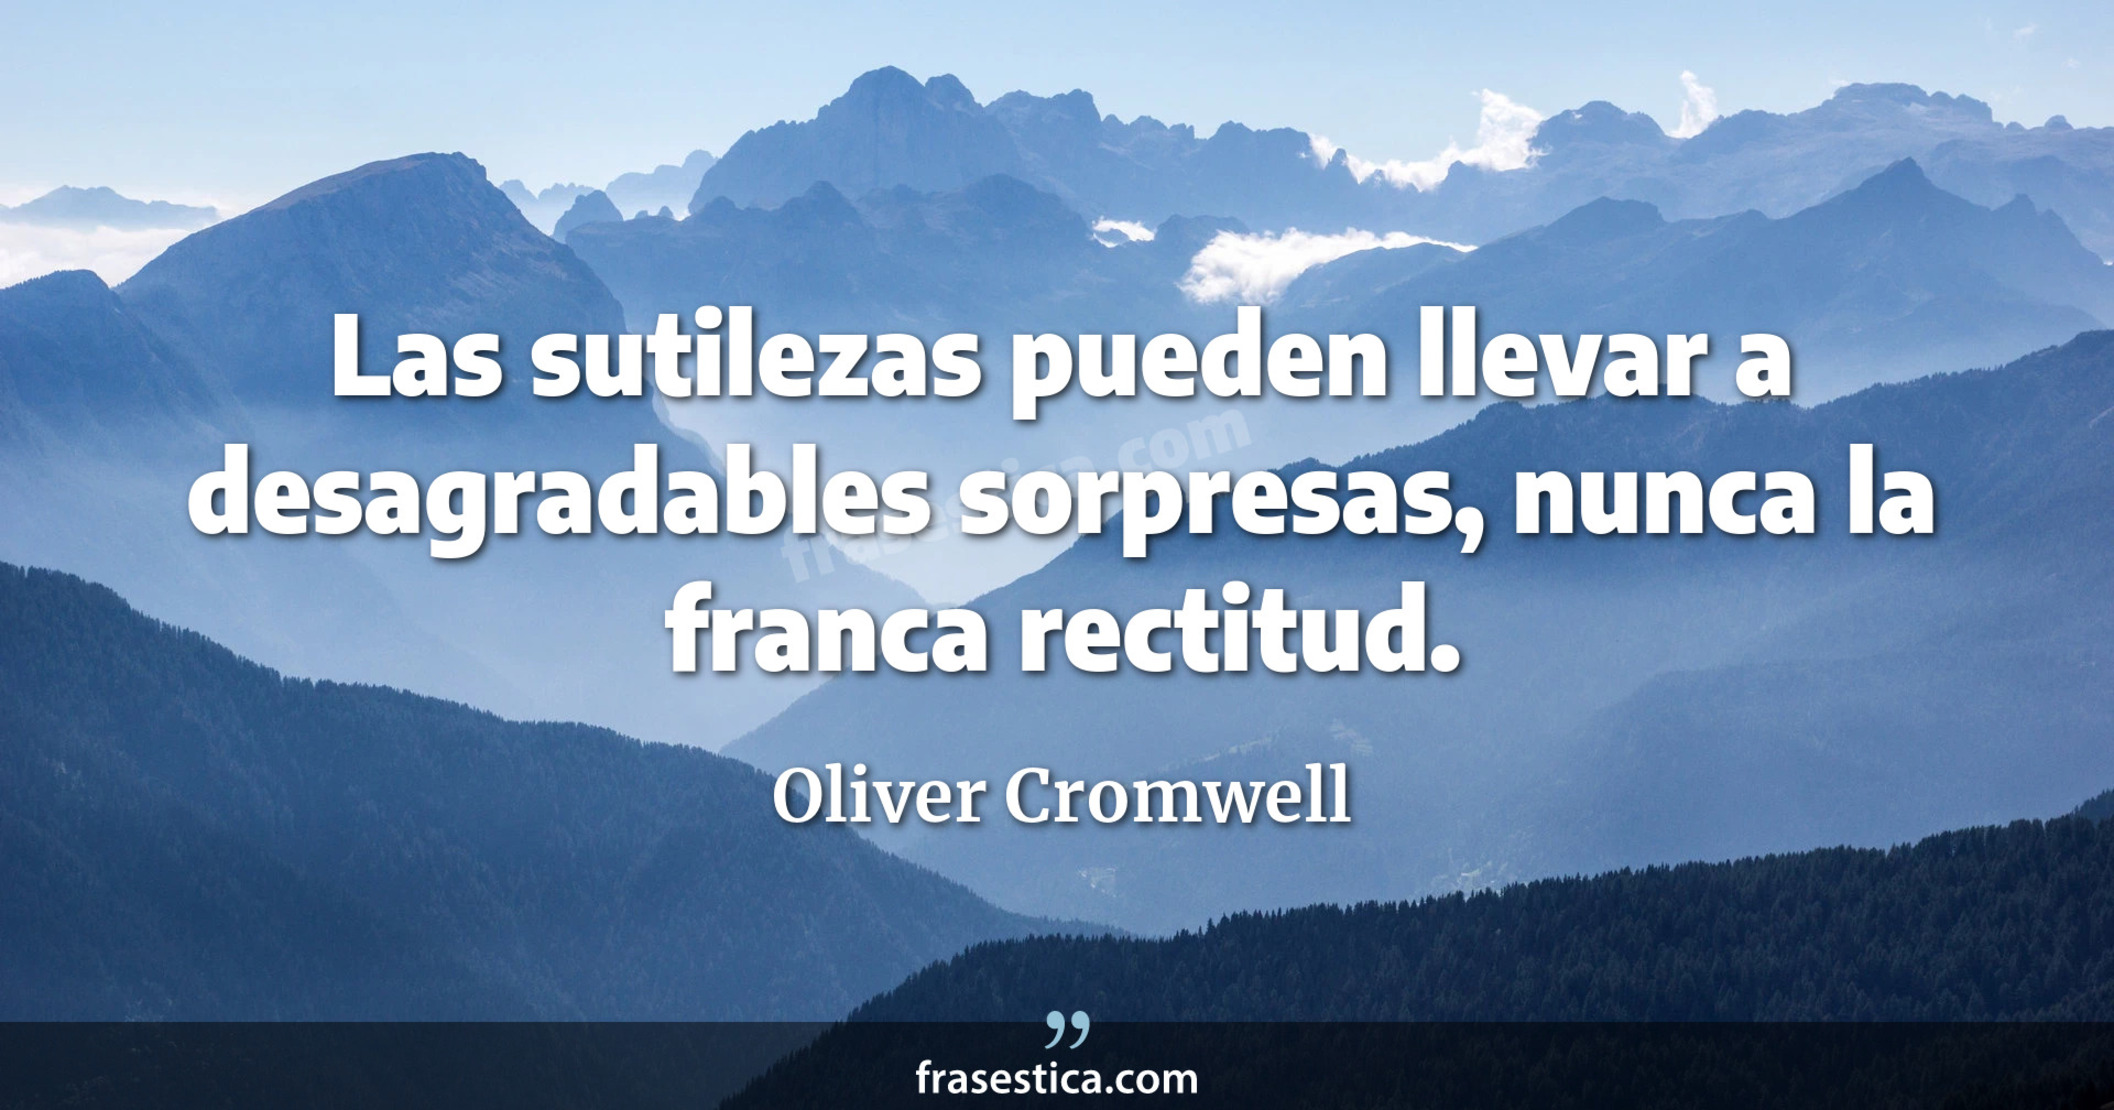 Las sutilezas pueden llevar a desagradables sorpresas, nunca la franca rectitud. - Oliver Cromwell